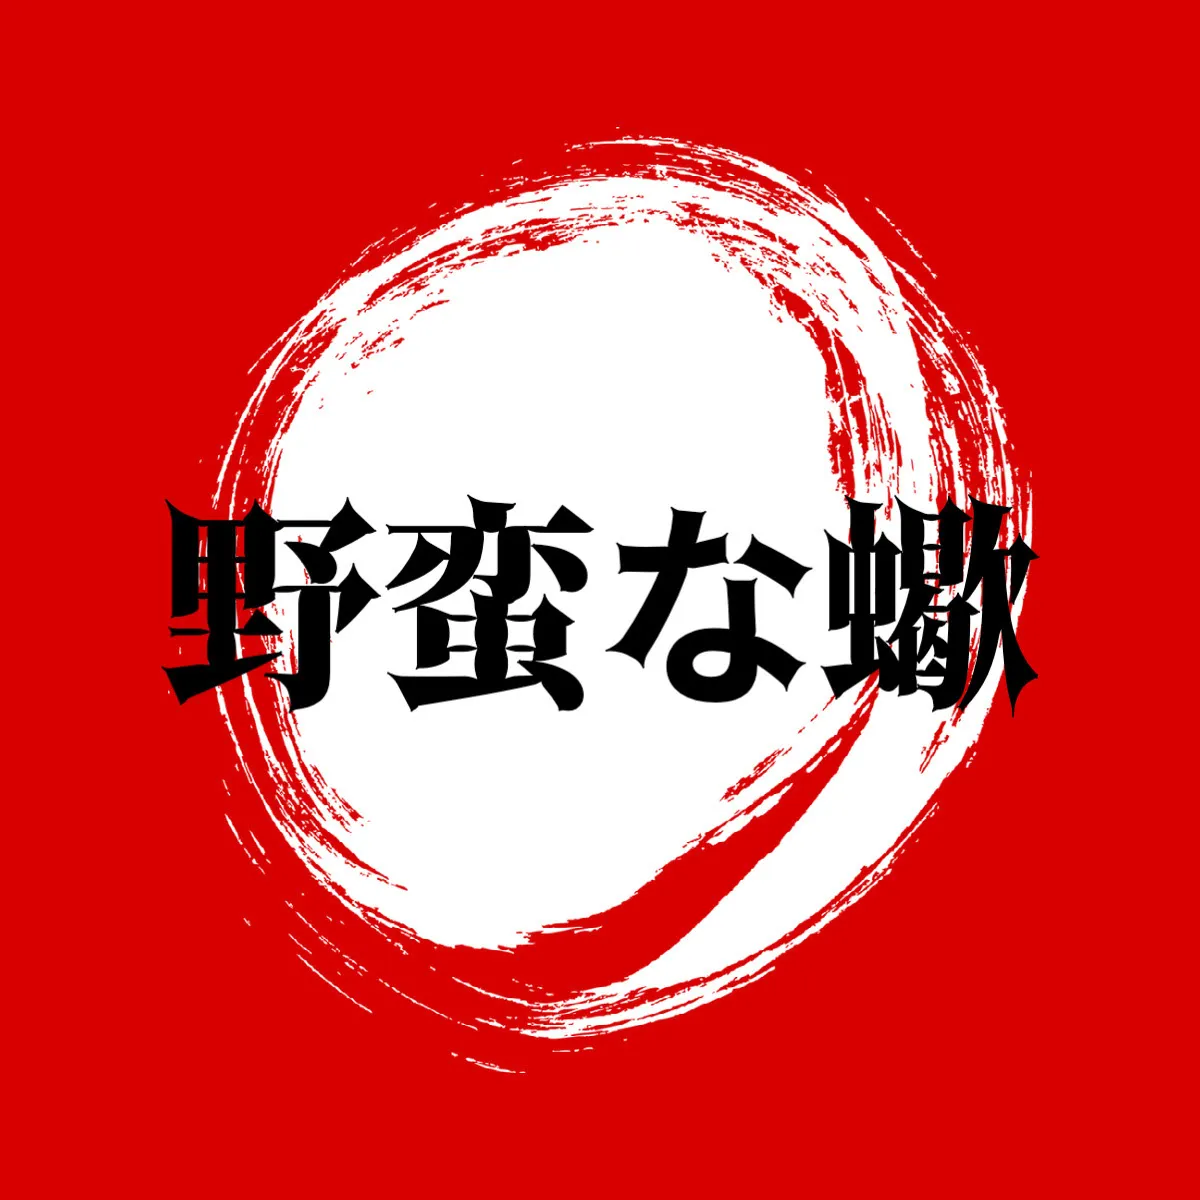 red band logo